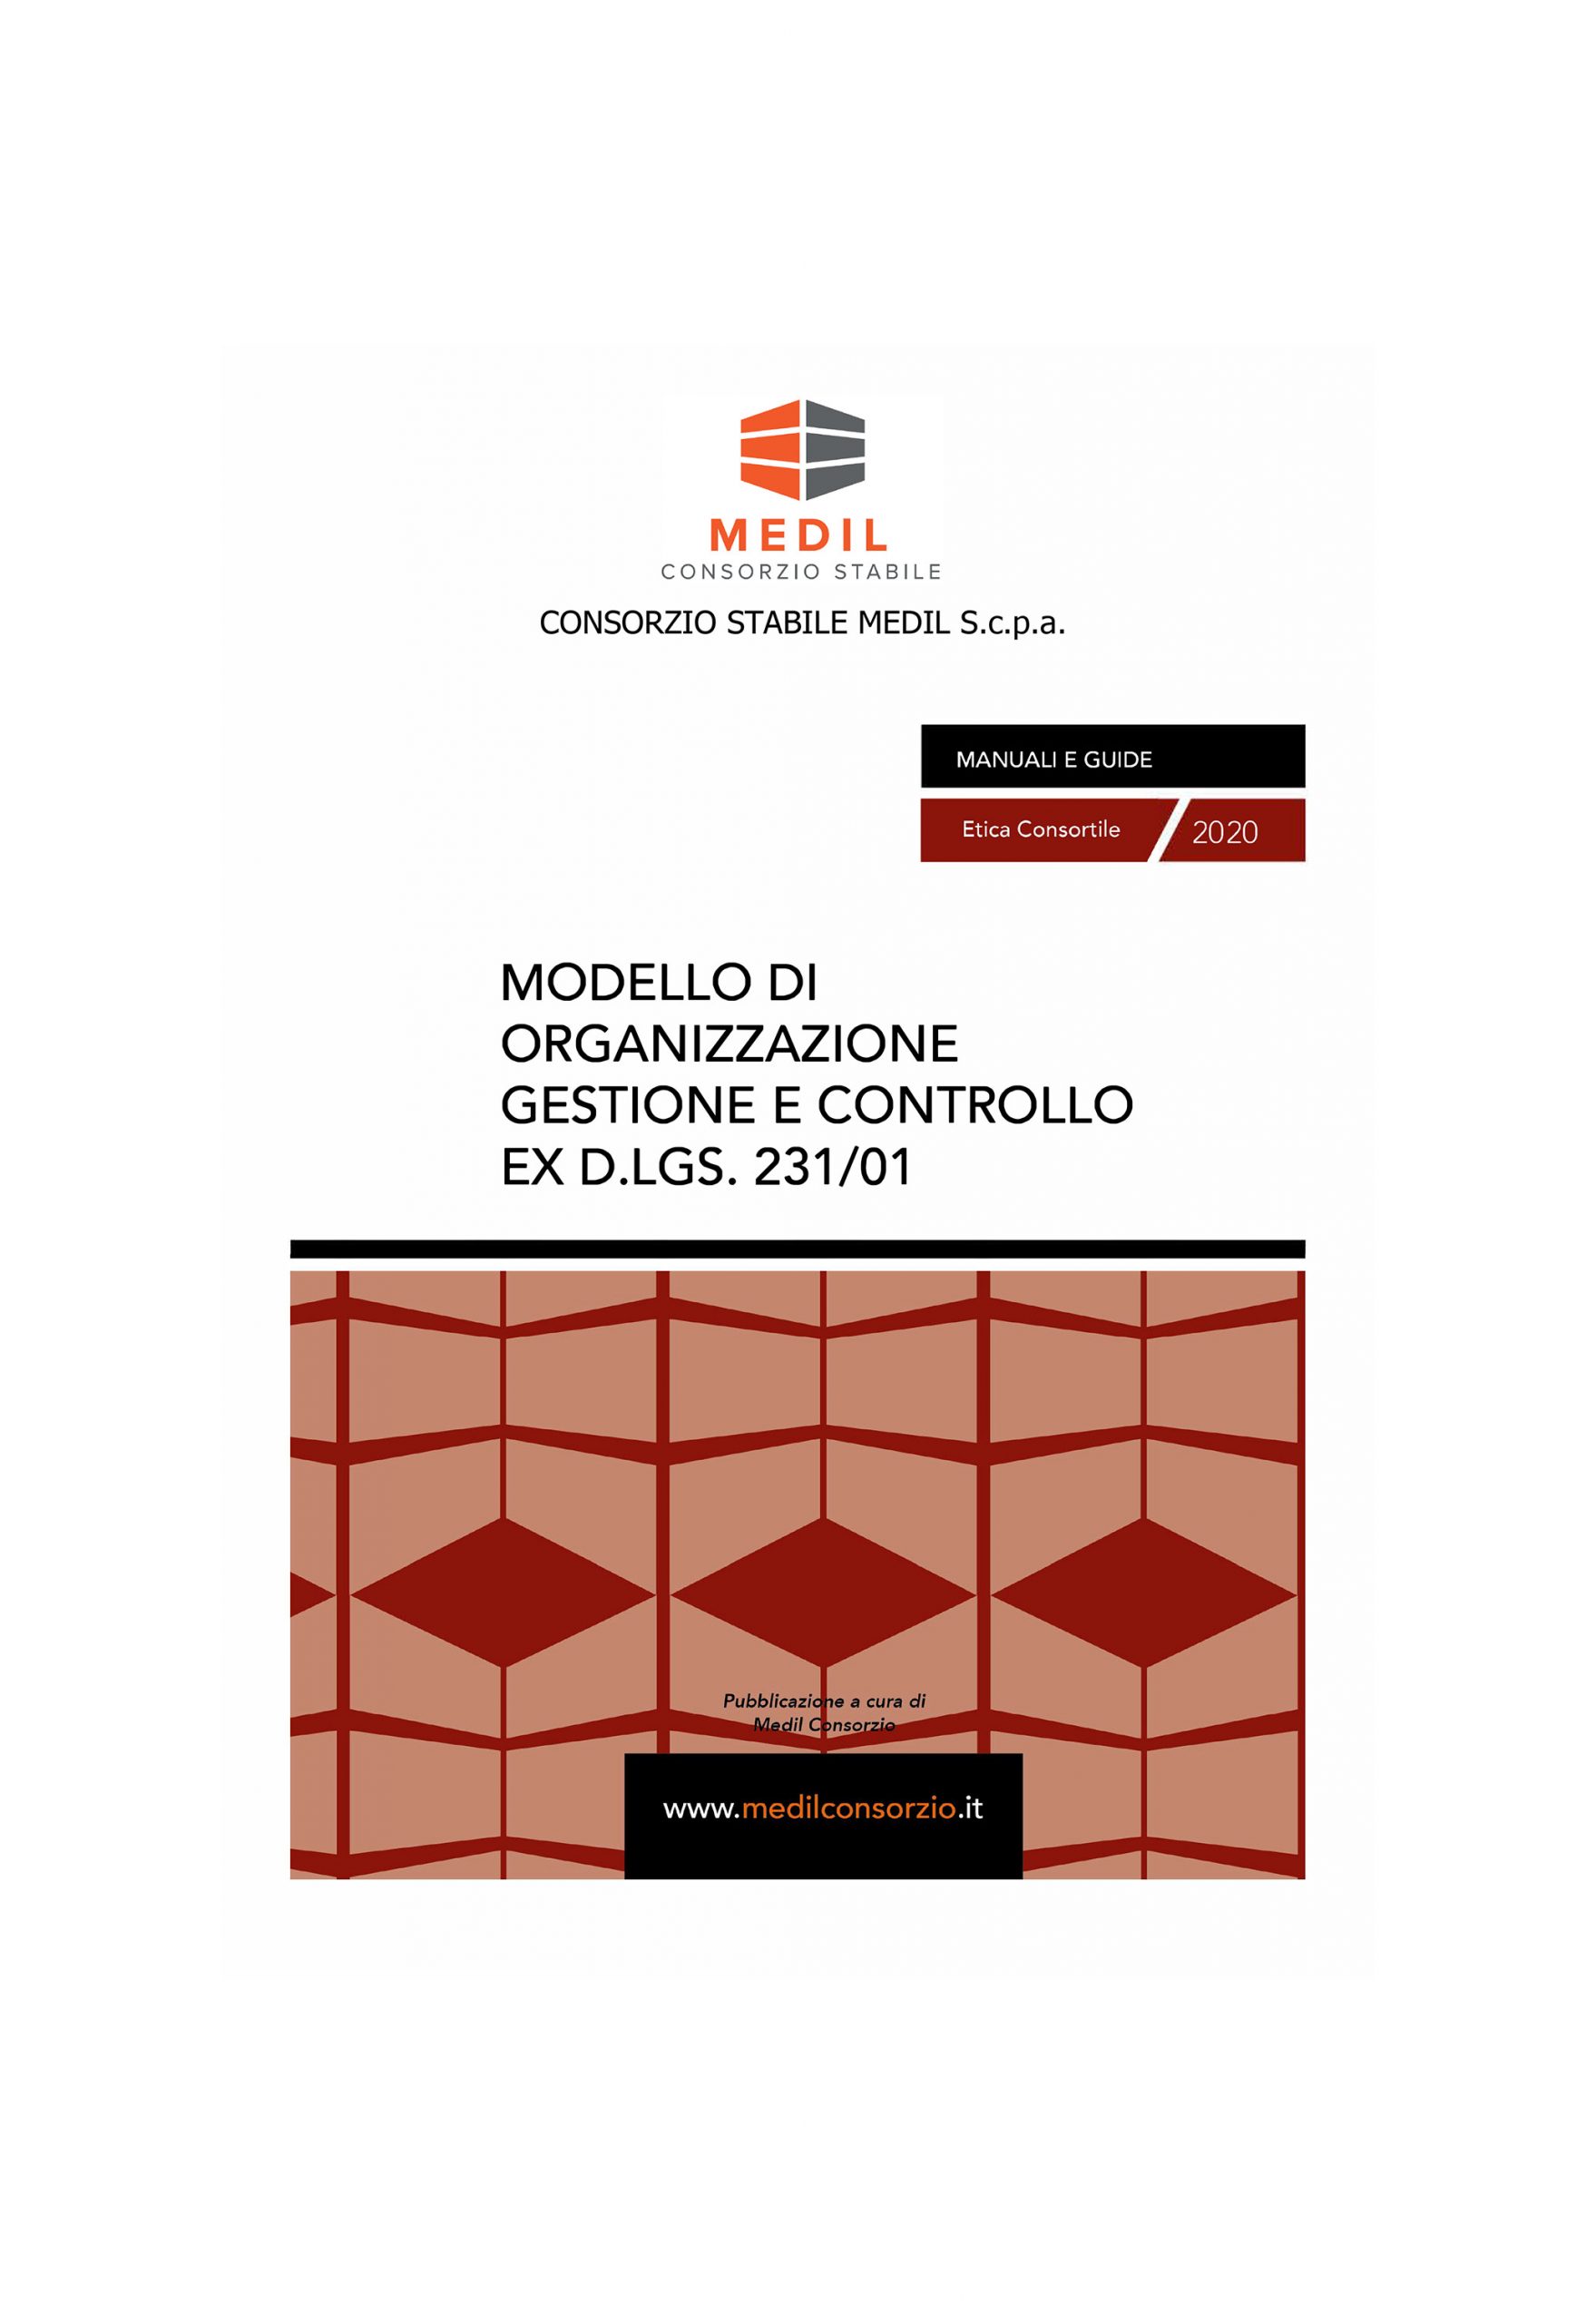 Modello di organizzazione gestione e controllo EX D.LGS. 231/01 